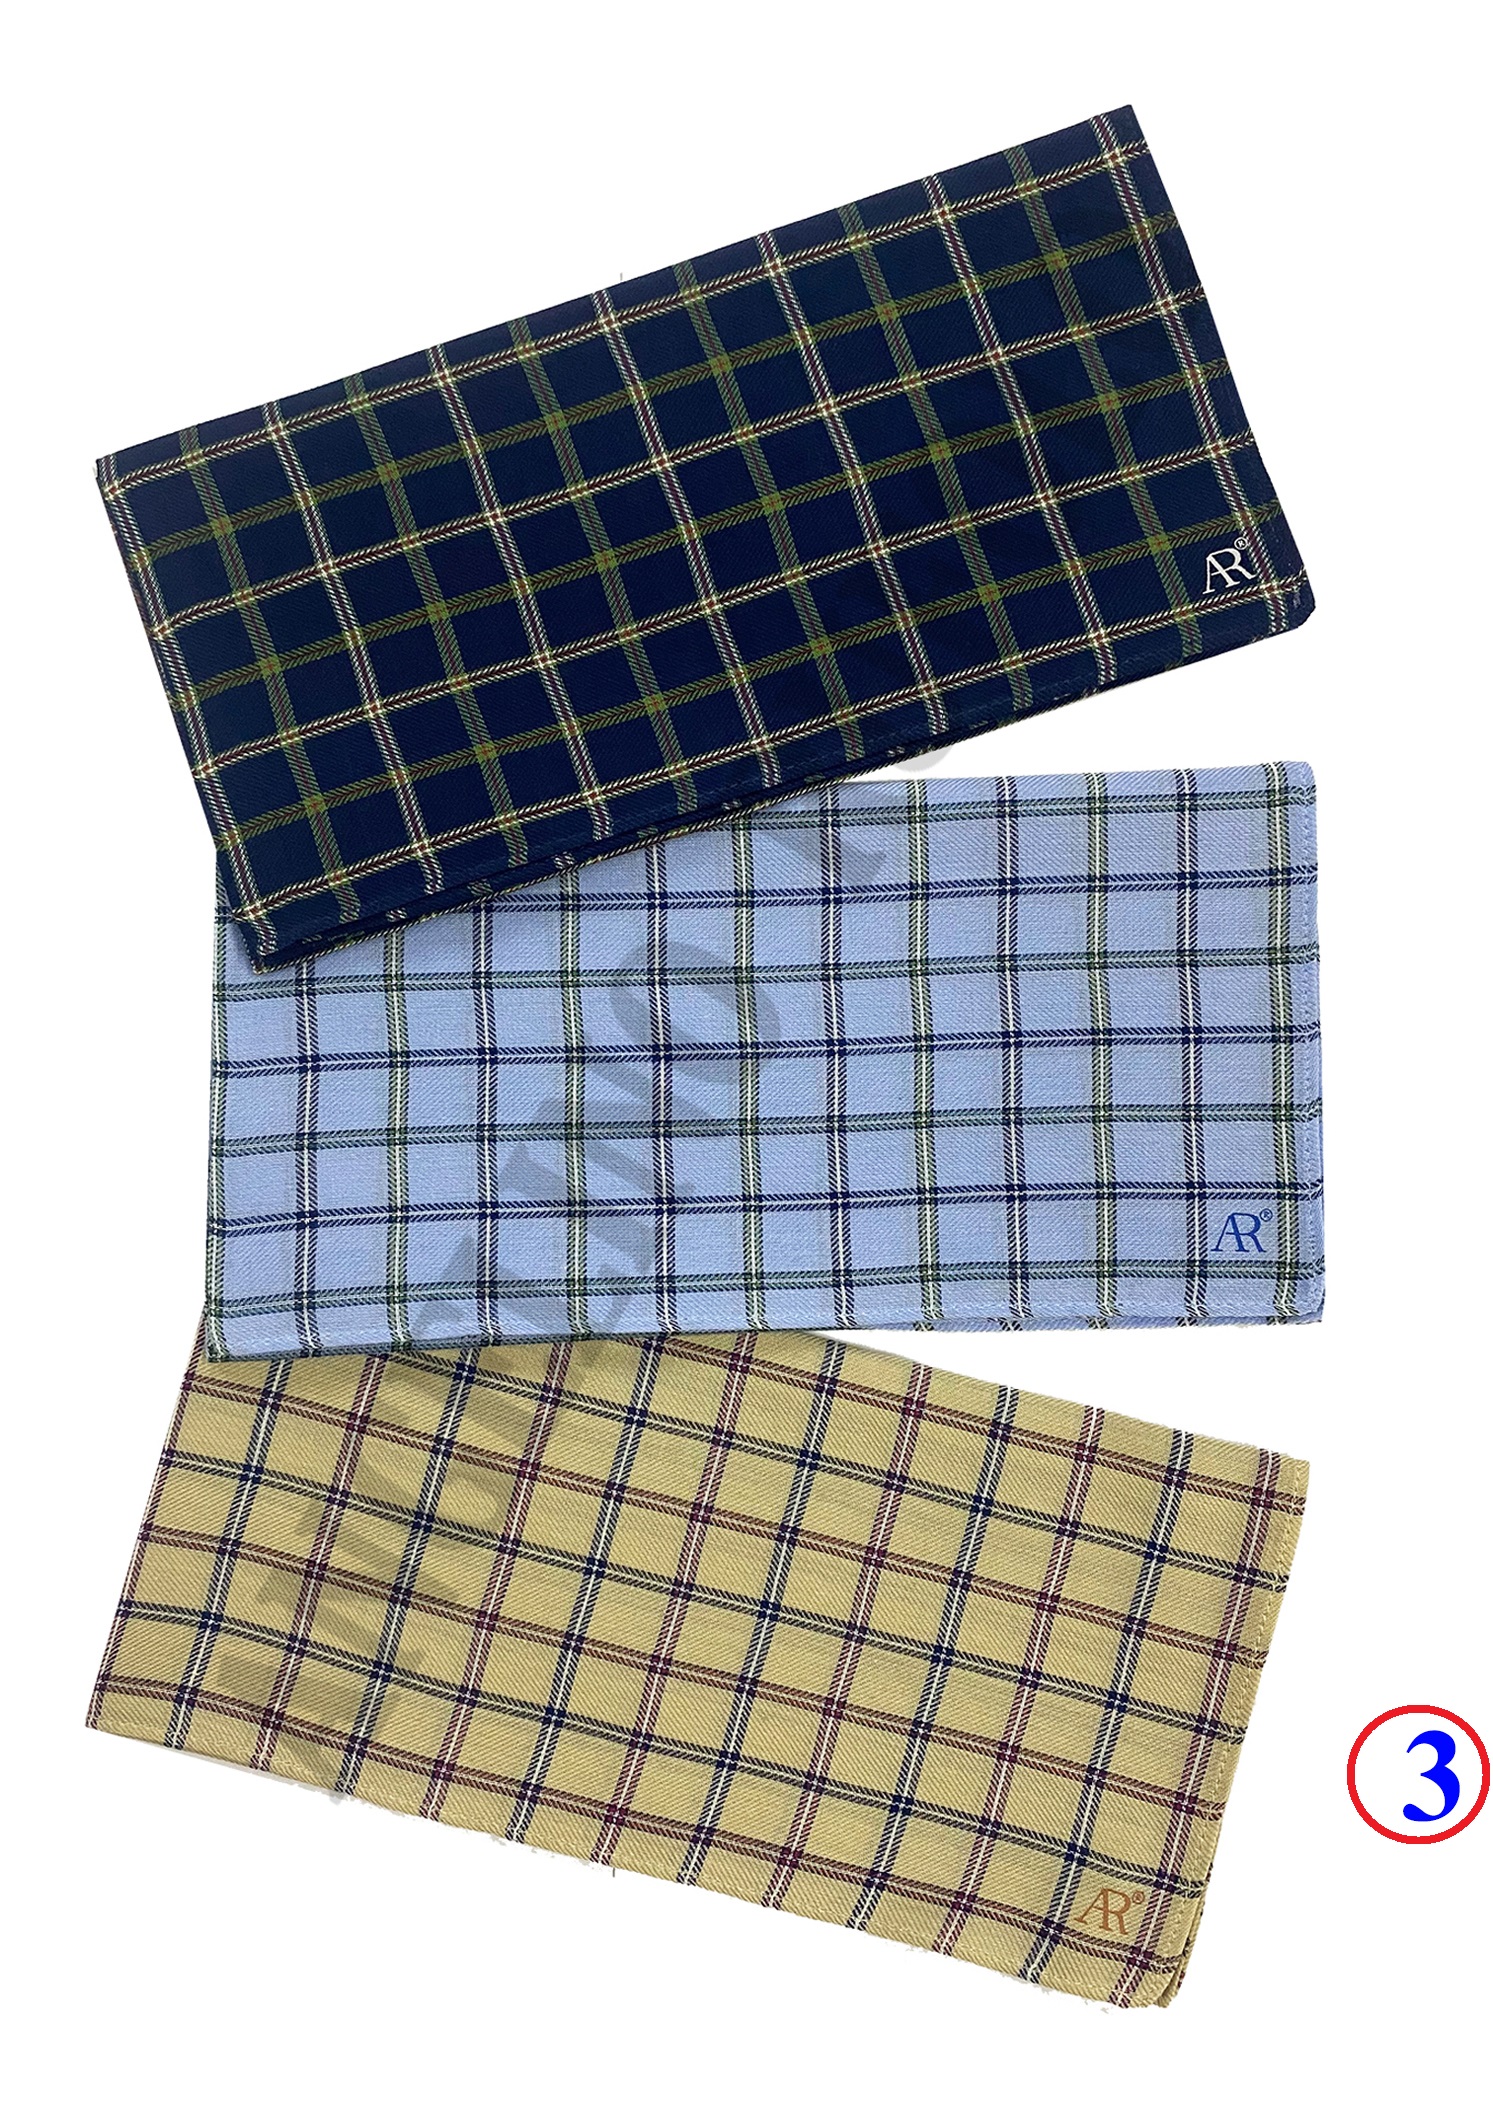 ANGELINO RUFOLO Handkerchief (ผ้าเช็ดหน้า) ผ้า 100% COTTON คุณภาพเยี่ยม ดีไซน์ Scot สีกรมท่า/สีฟ้า/สีกากี